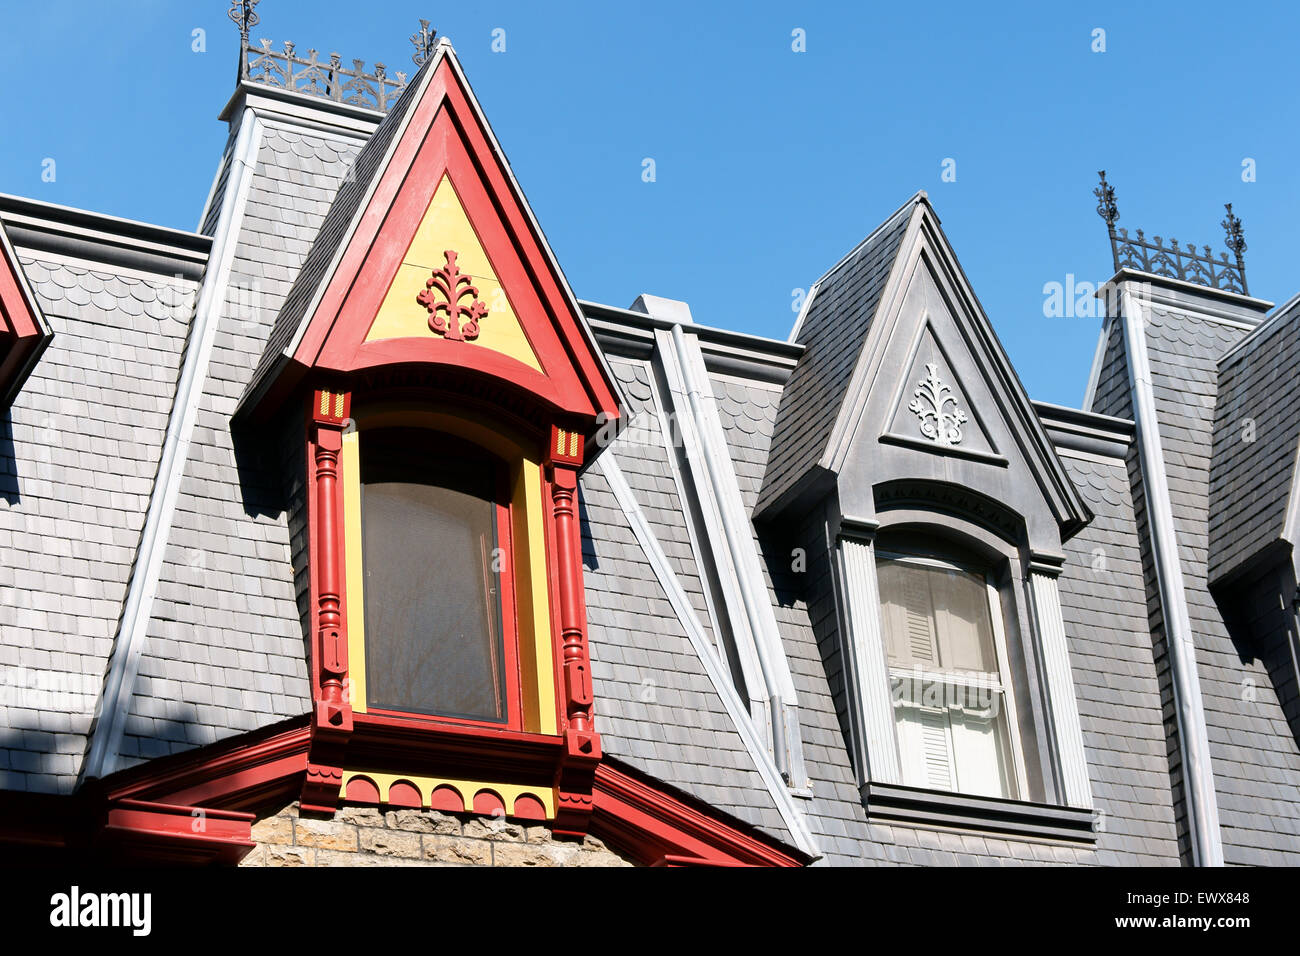 Maisons victoriennes colorées à Saint-Louis place appelée "Painted Ladies" à Montréal, Québec, Canada Banque D'Images